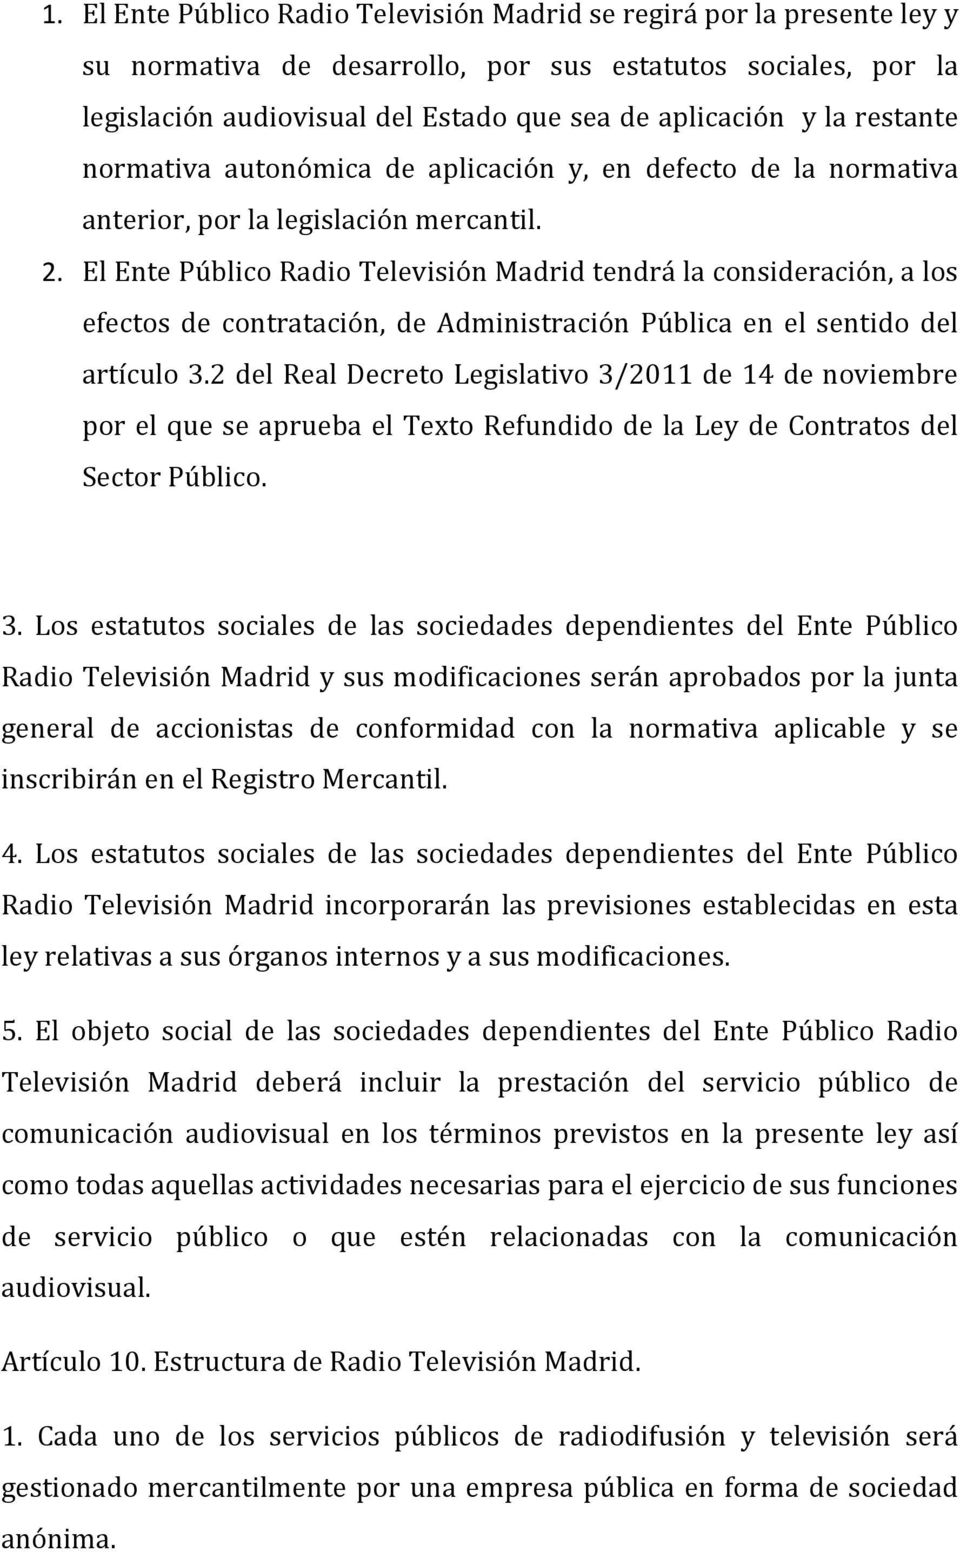 El Ente Público Radio Televisión Madrid tendrá la consideración, a los efectos de contratación, de Administración Pública en el sentido del artículo 3.